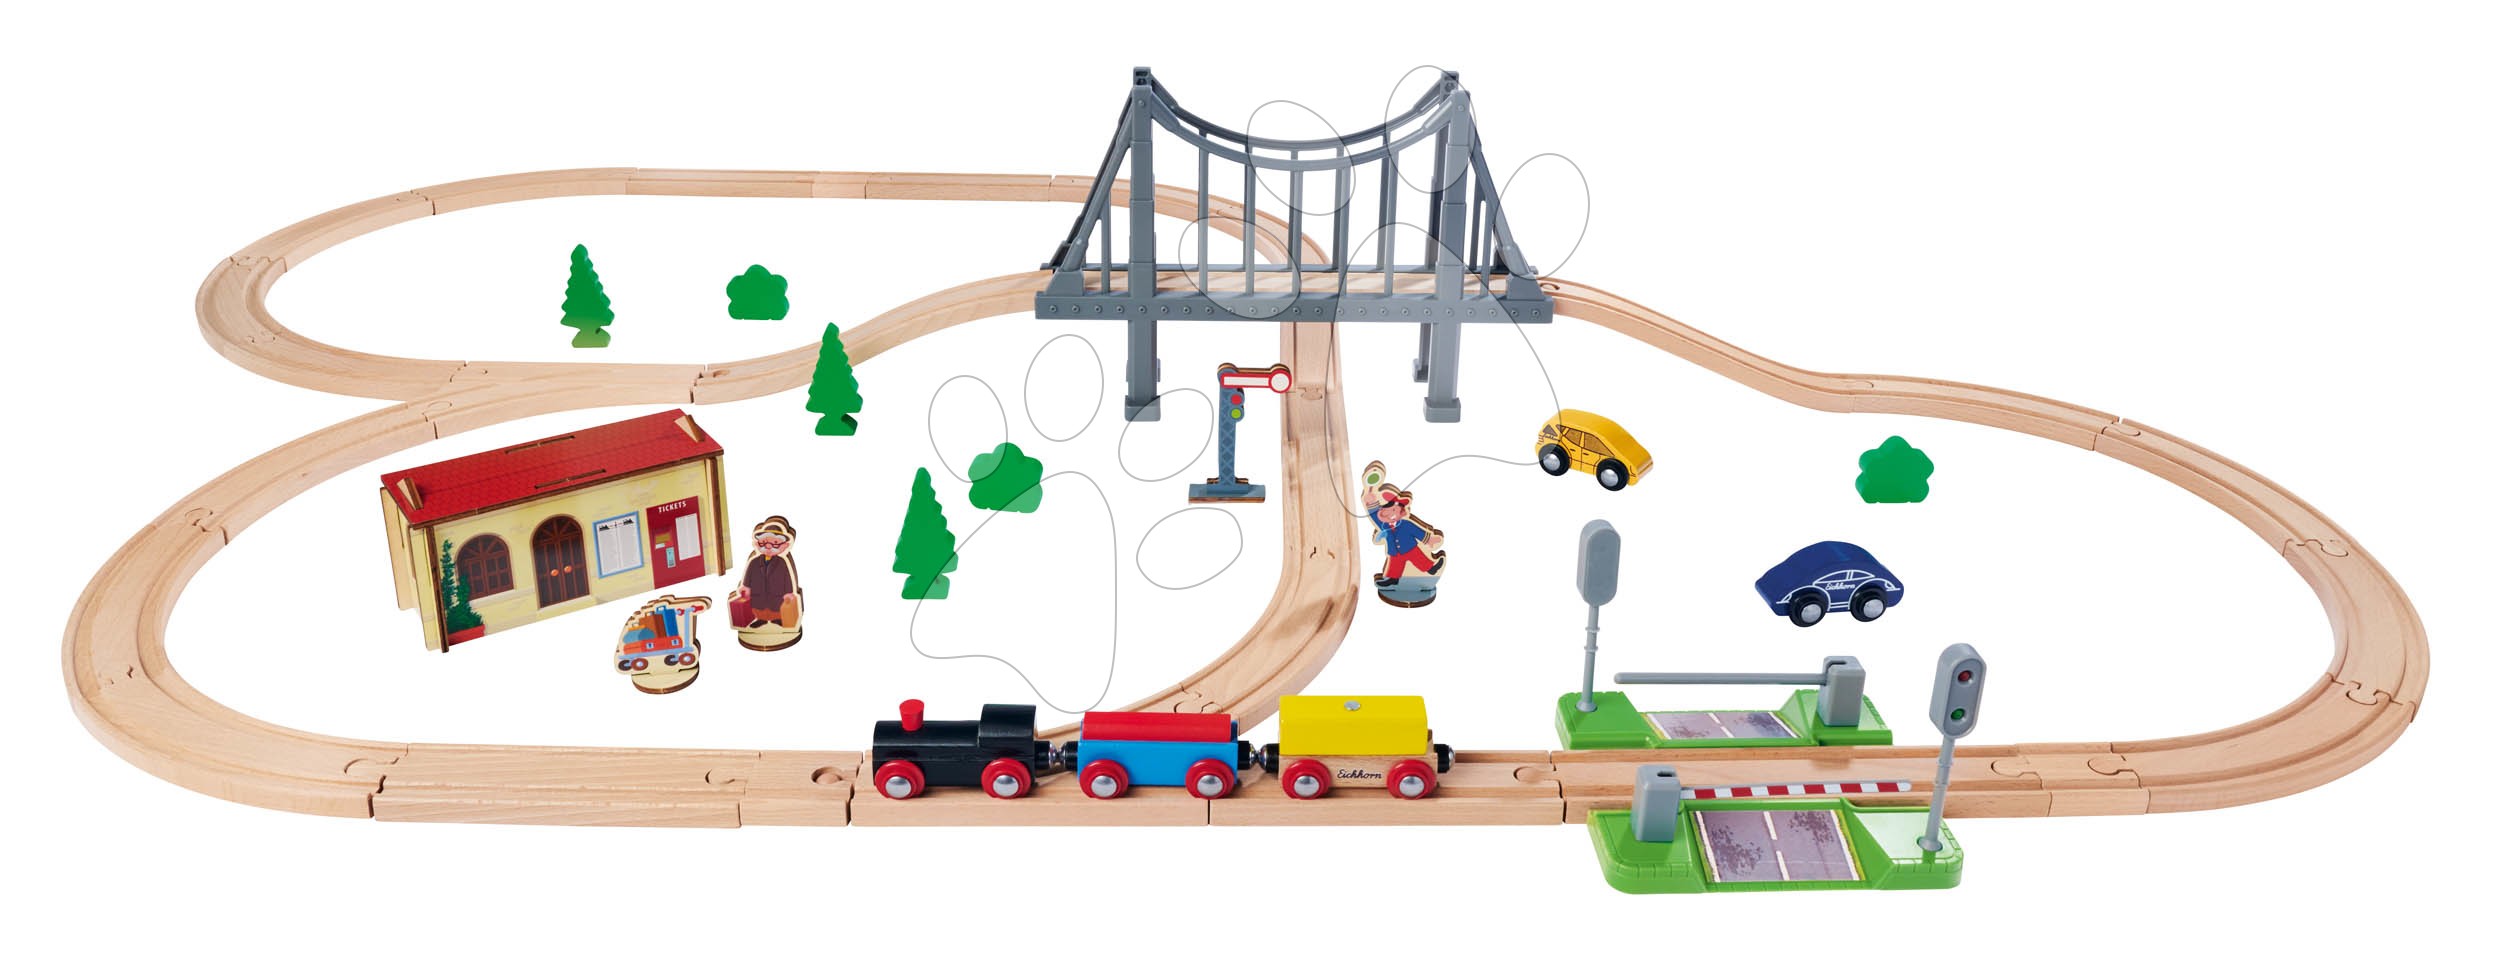 Fa vasúti sínpálya Train Set with Bridge Eichhorn mozdonnyal vagonnal híddal és kiegészítőkkel 55 darabos 500 cm hosszú sínpálya